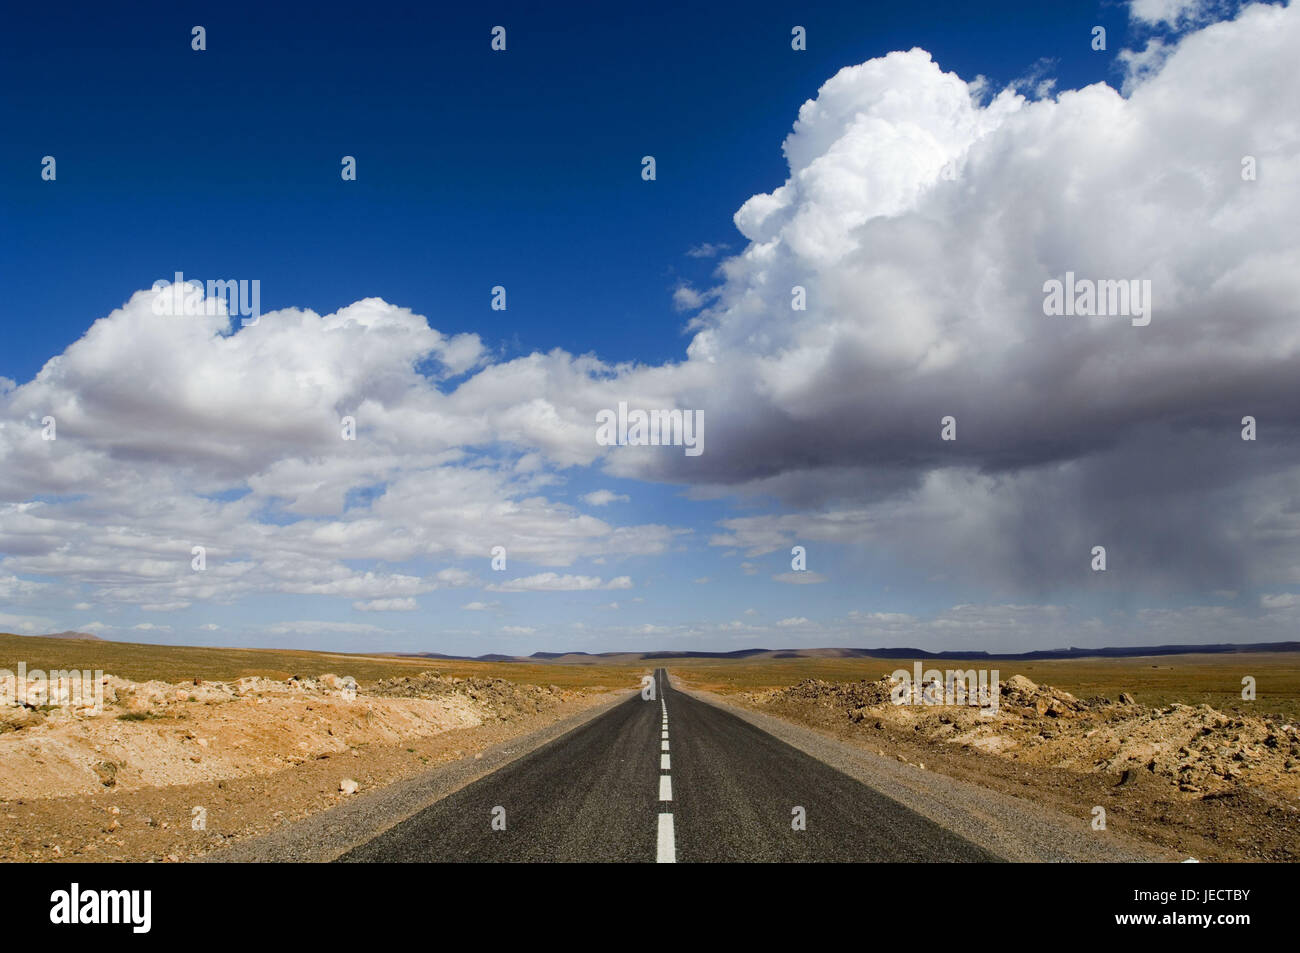 Le Maroc, Ouarzazate, route de campagne, ciel nuageux, Afrique, Afrique du Nord, paysage, de largeur, de distance, d'horizon, point de fuite, point de fuite, perspective, perspective centrale, Ciel, nuages, la solitude, à l'extérieur, déserte, Banque D'Images